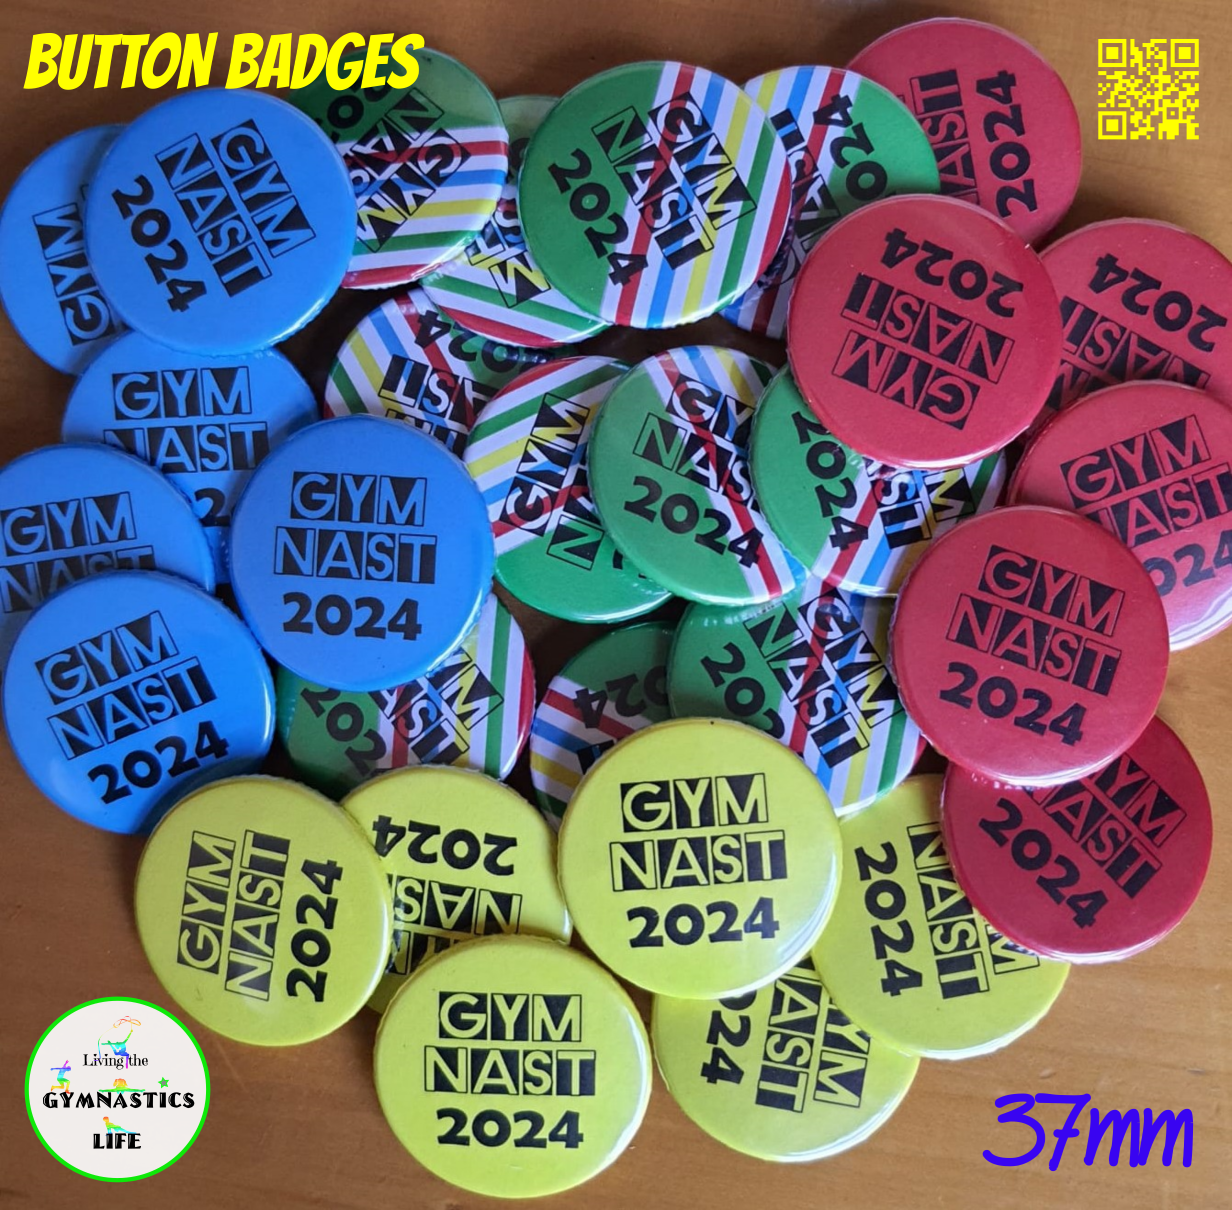 37mm Button Badges